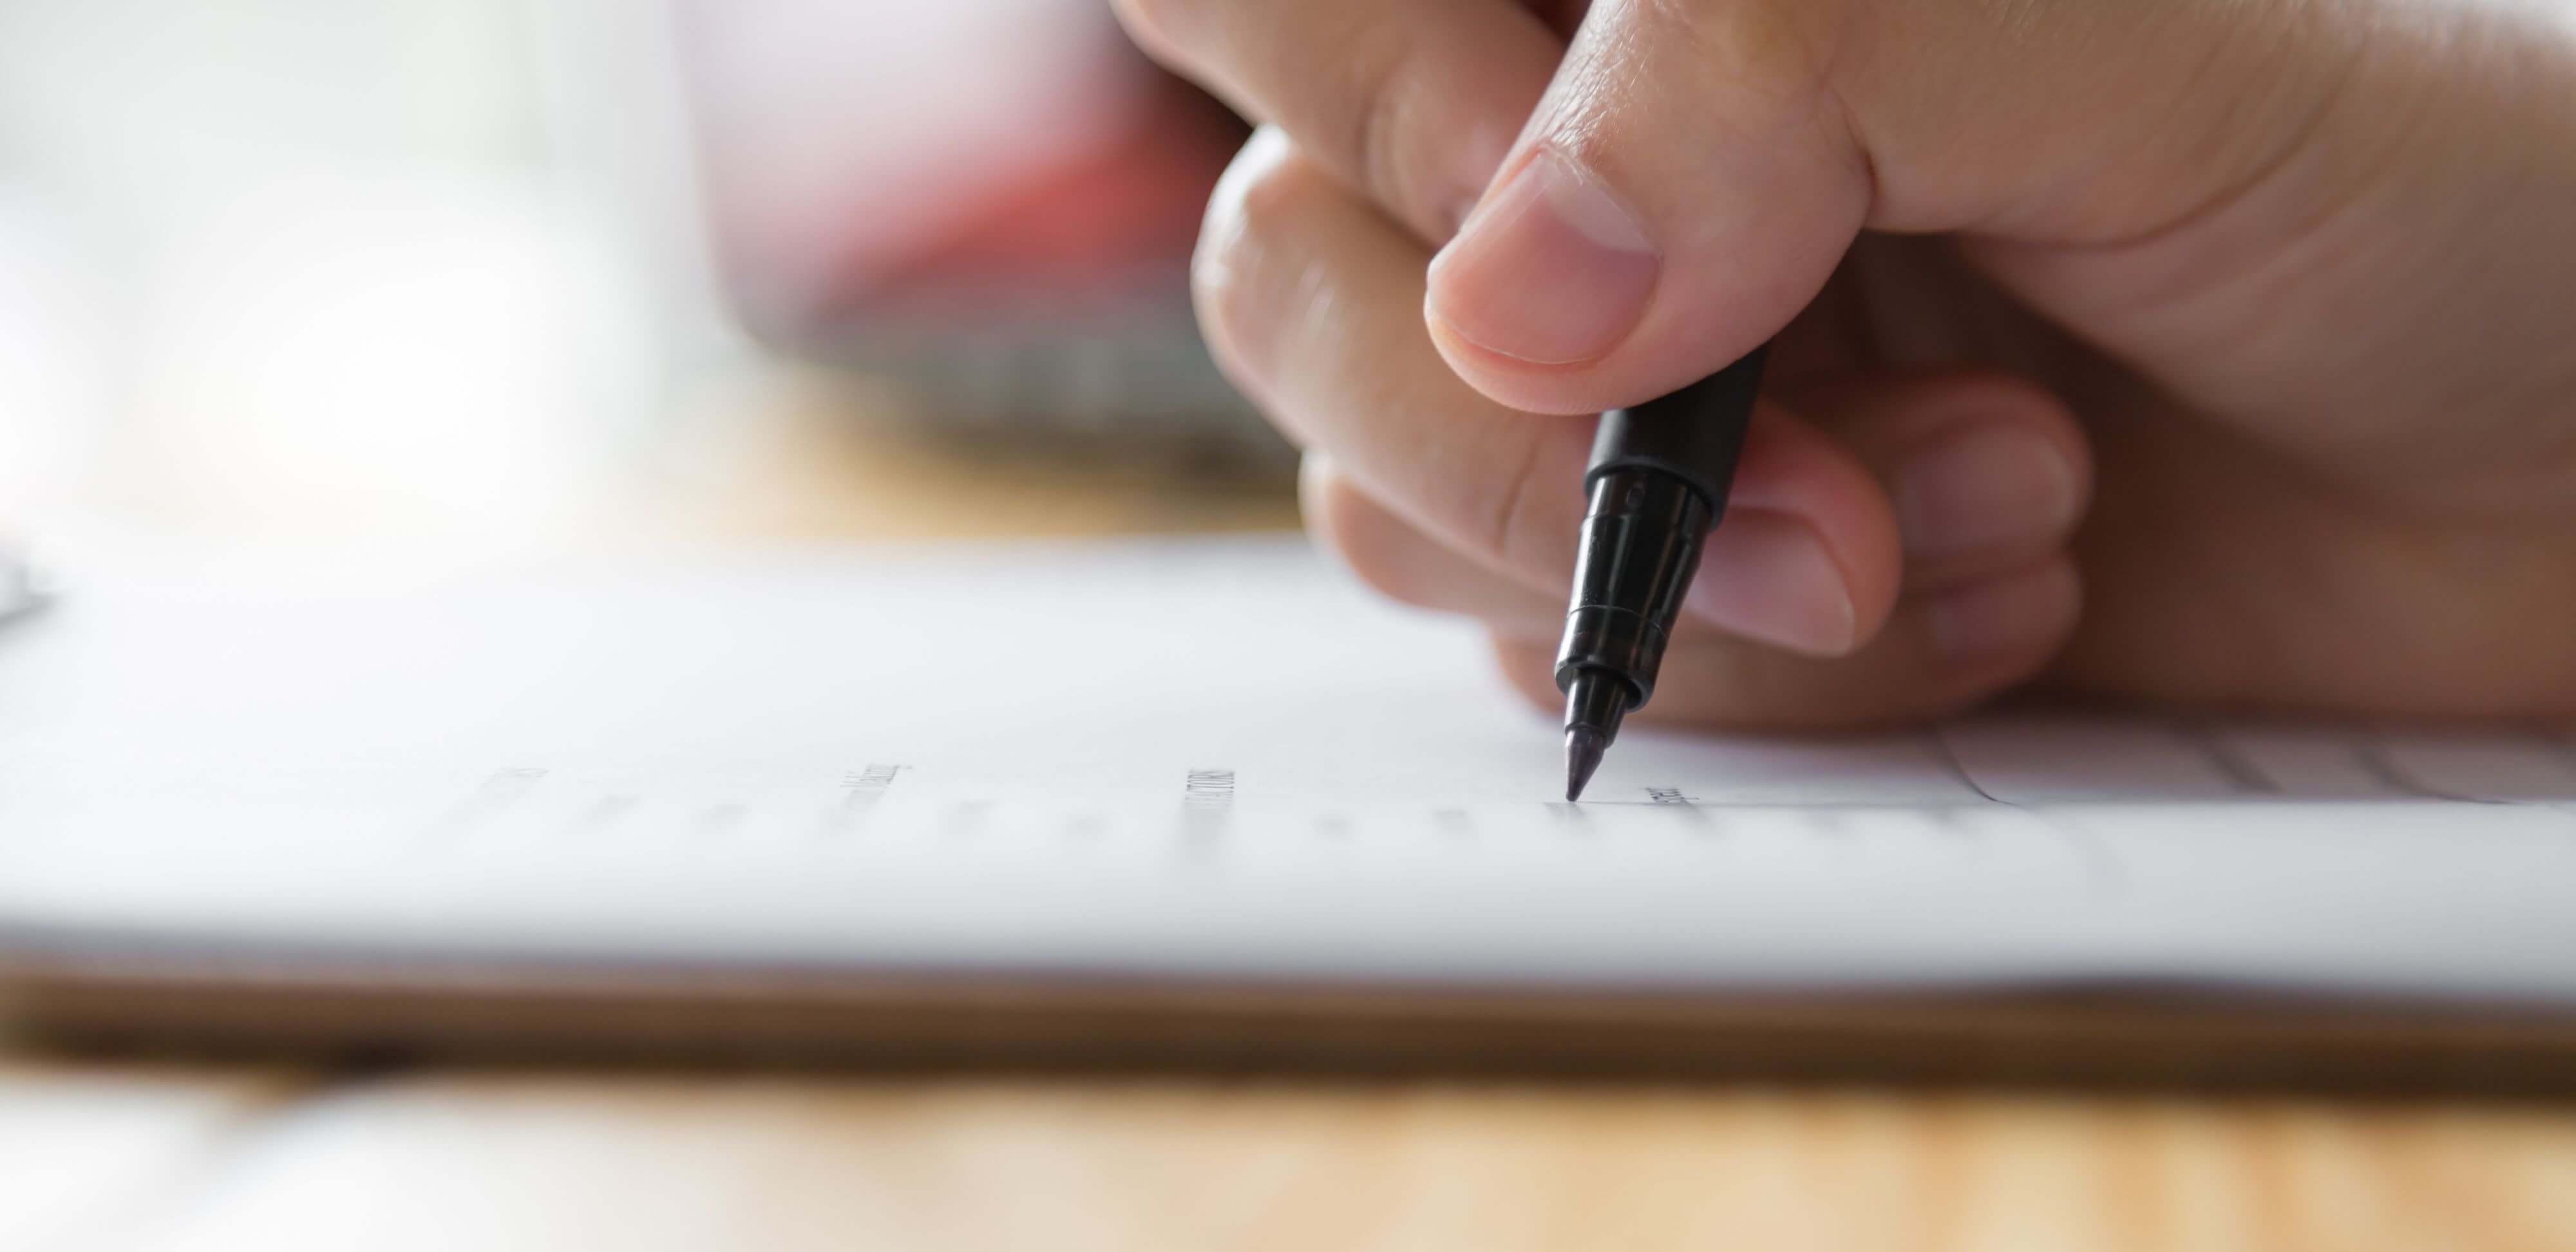 Regras de uma redação: fotografia de uma mão escrevendo uma redação com uma caneta.